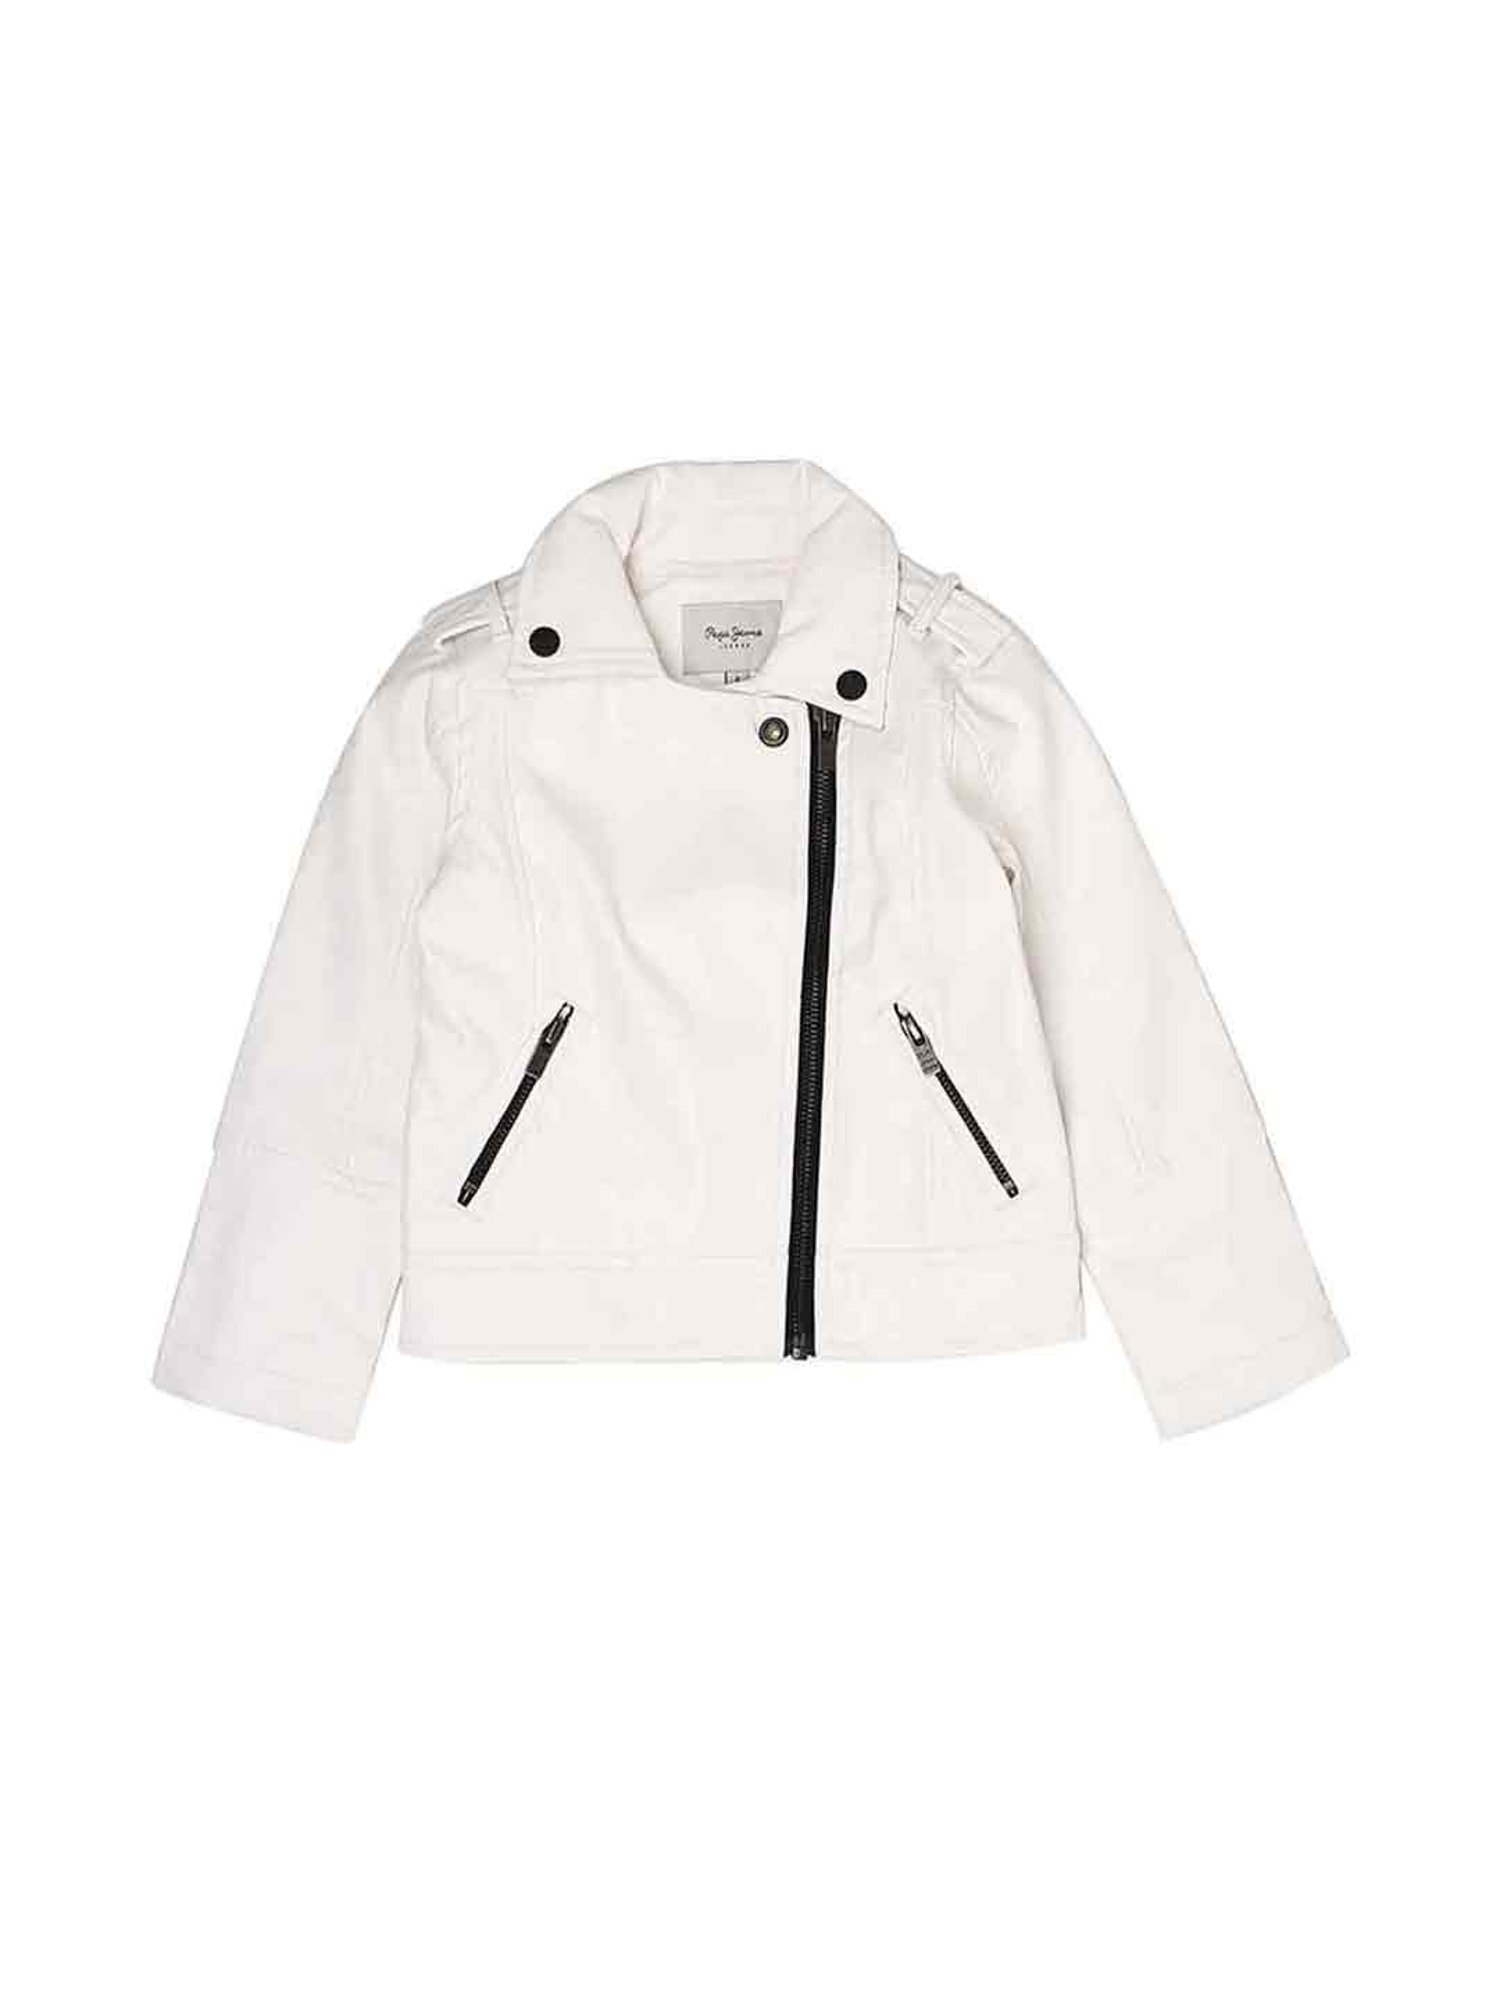 Girls Short Sleeve Satin Woven Bolero Jacket - All Dressed Up | Gymboree -  SOFT WHITE